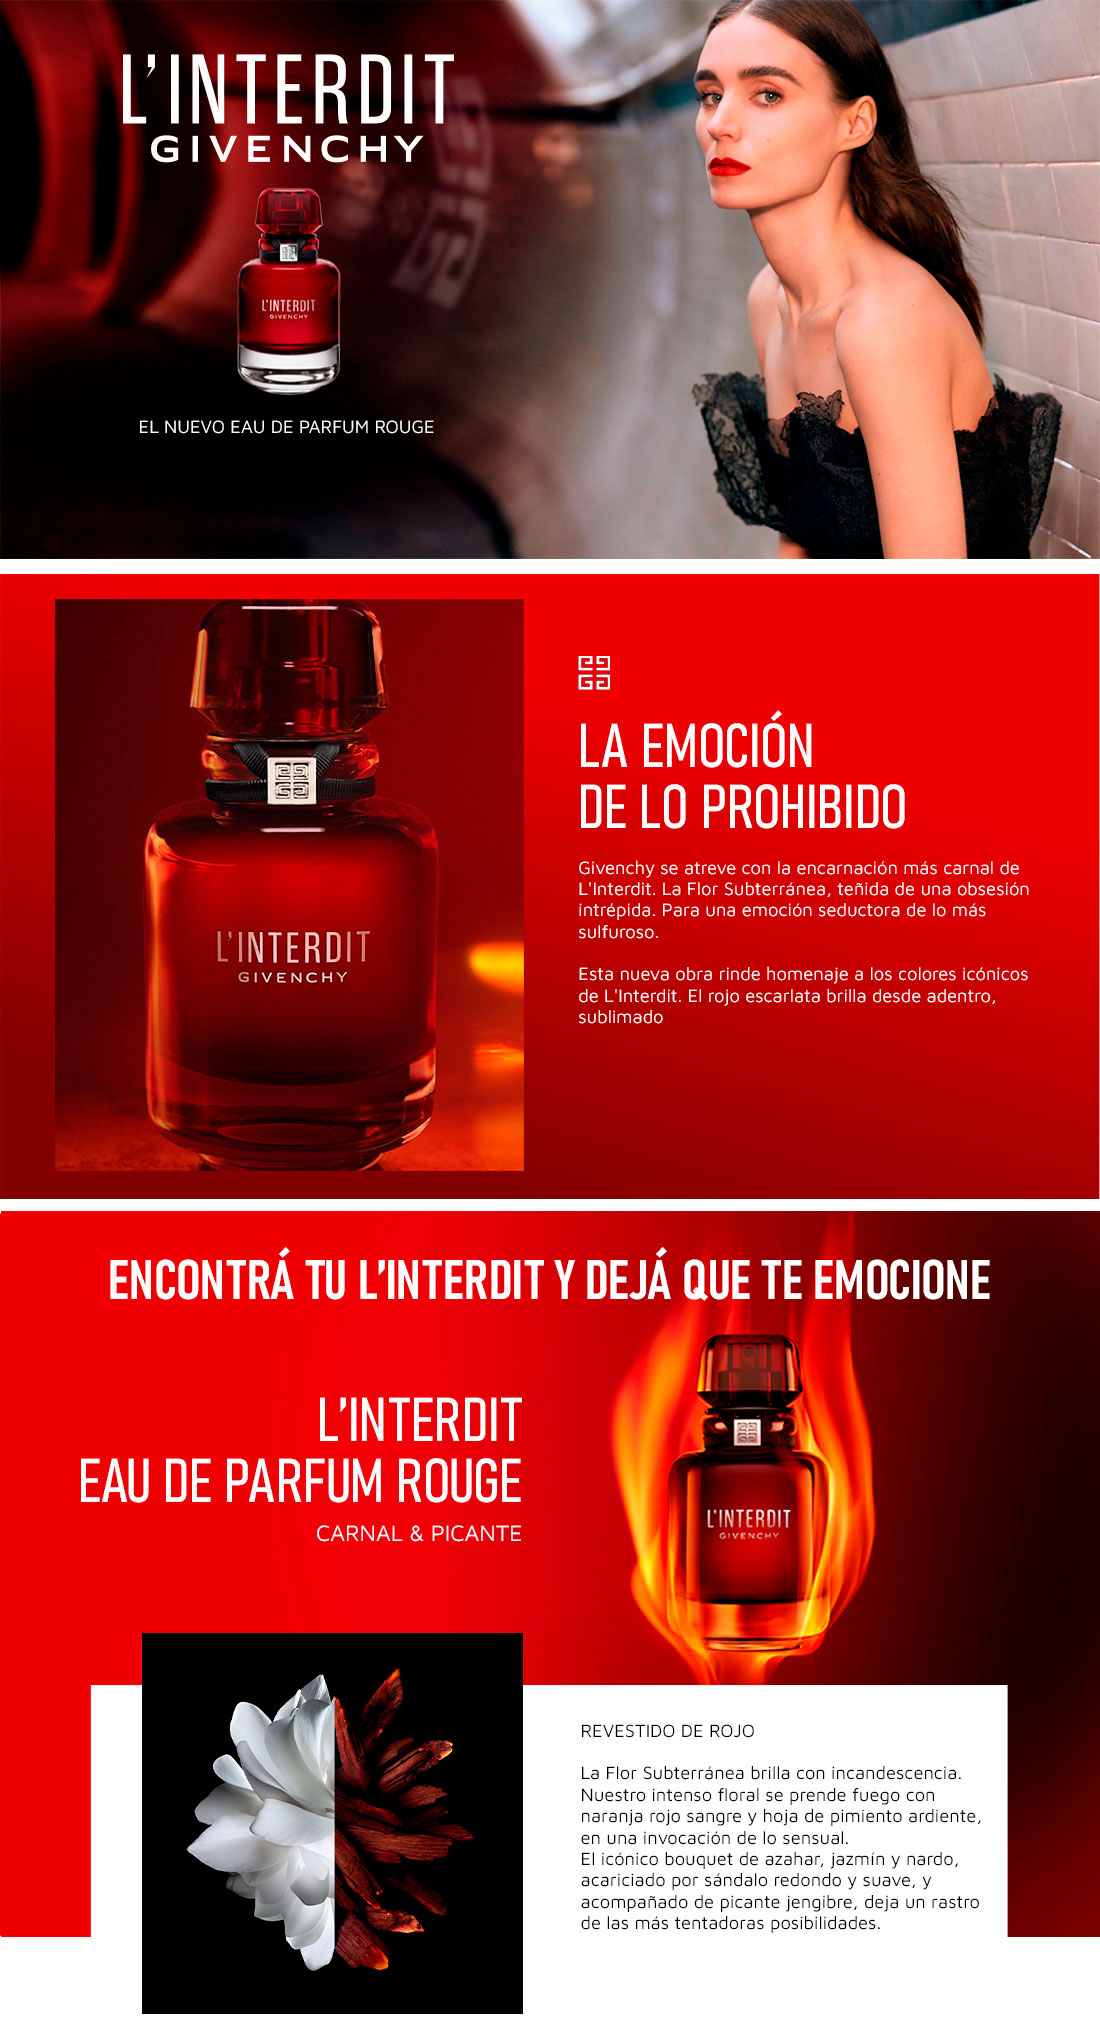 Detalles del L'Interdit Eau de Parfum Rouge